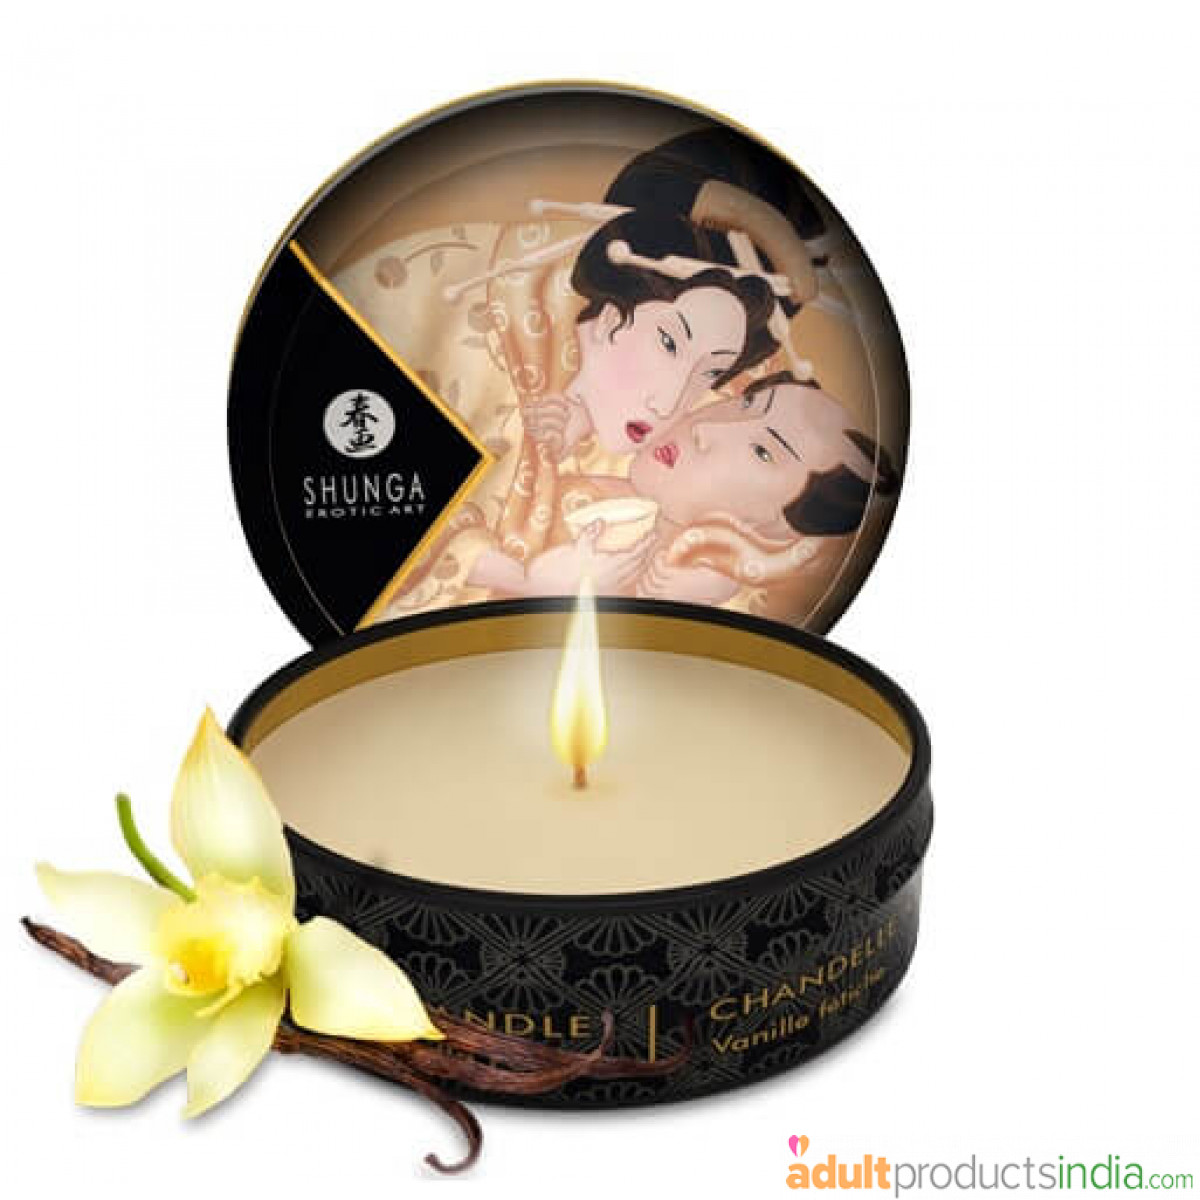 Shunga Japanese Massage Candle - Vanilla Fetish 